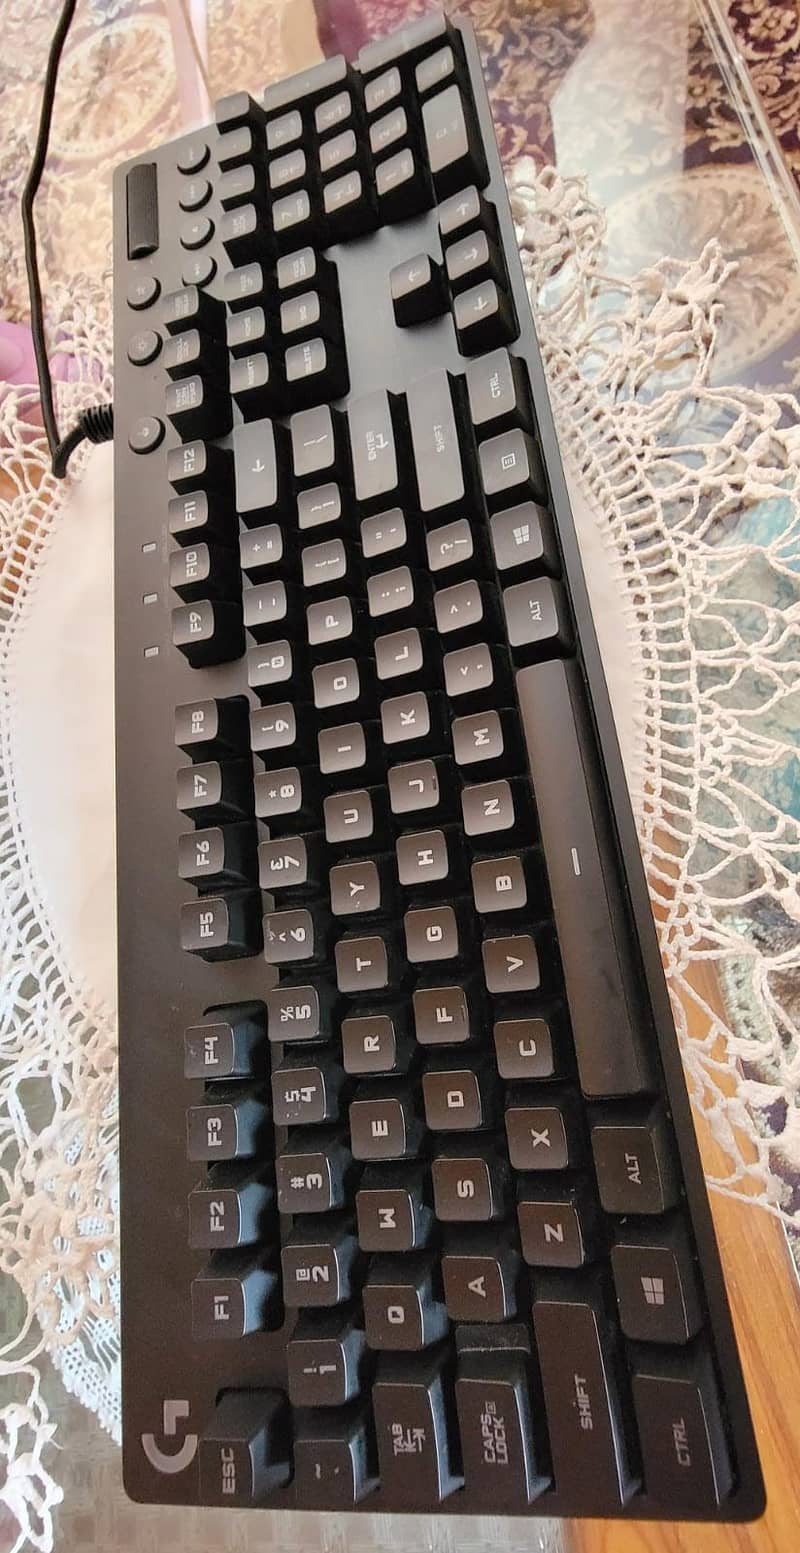 Logitech G810 Orion Spectrum RGB keyboard. 1